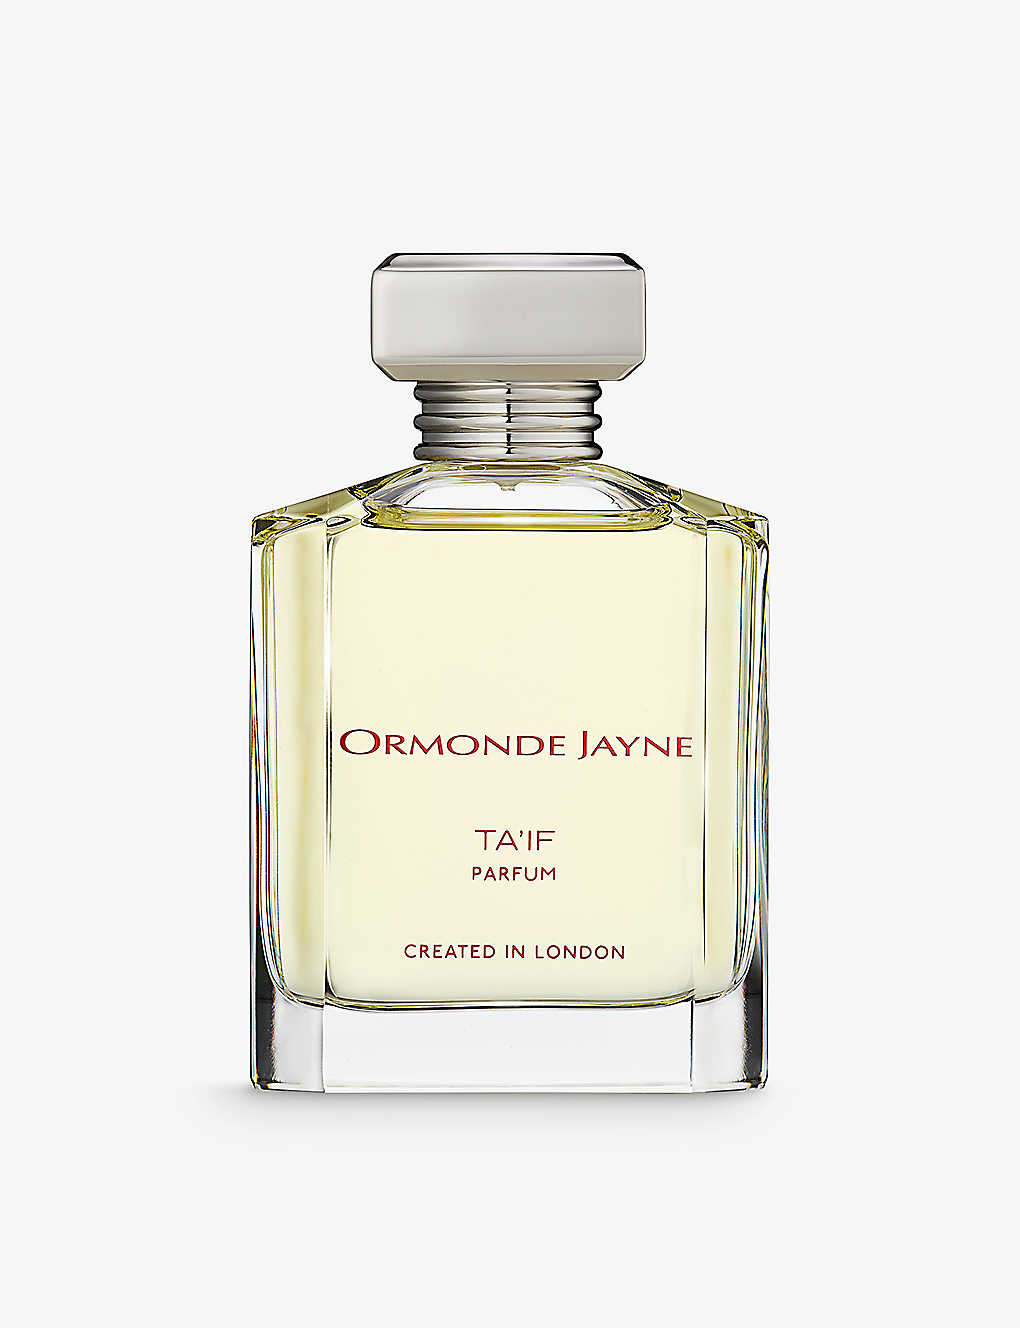 Ormonde Jayne Ta'if Parfum In White